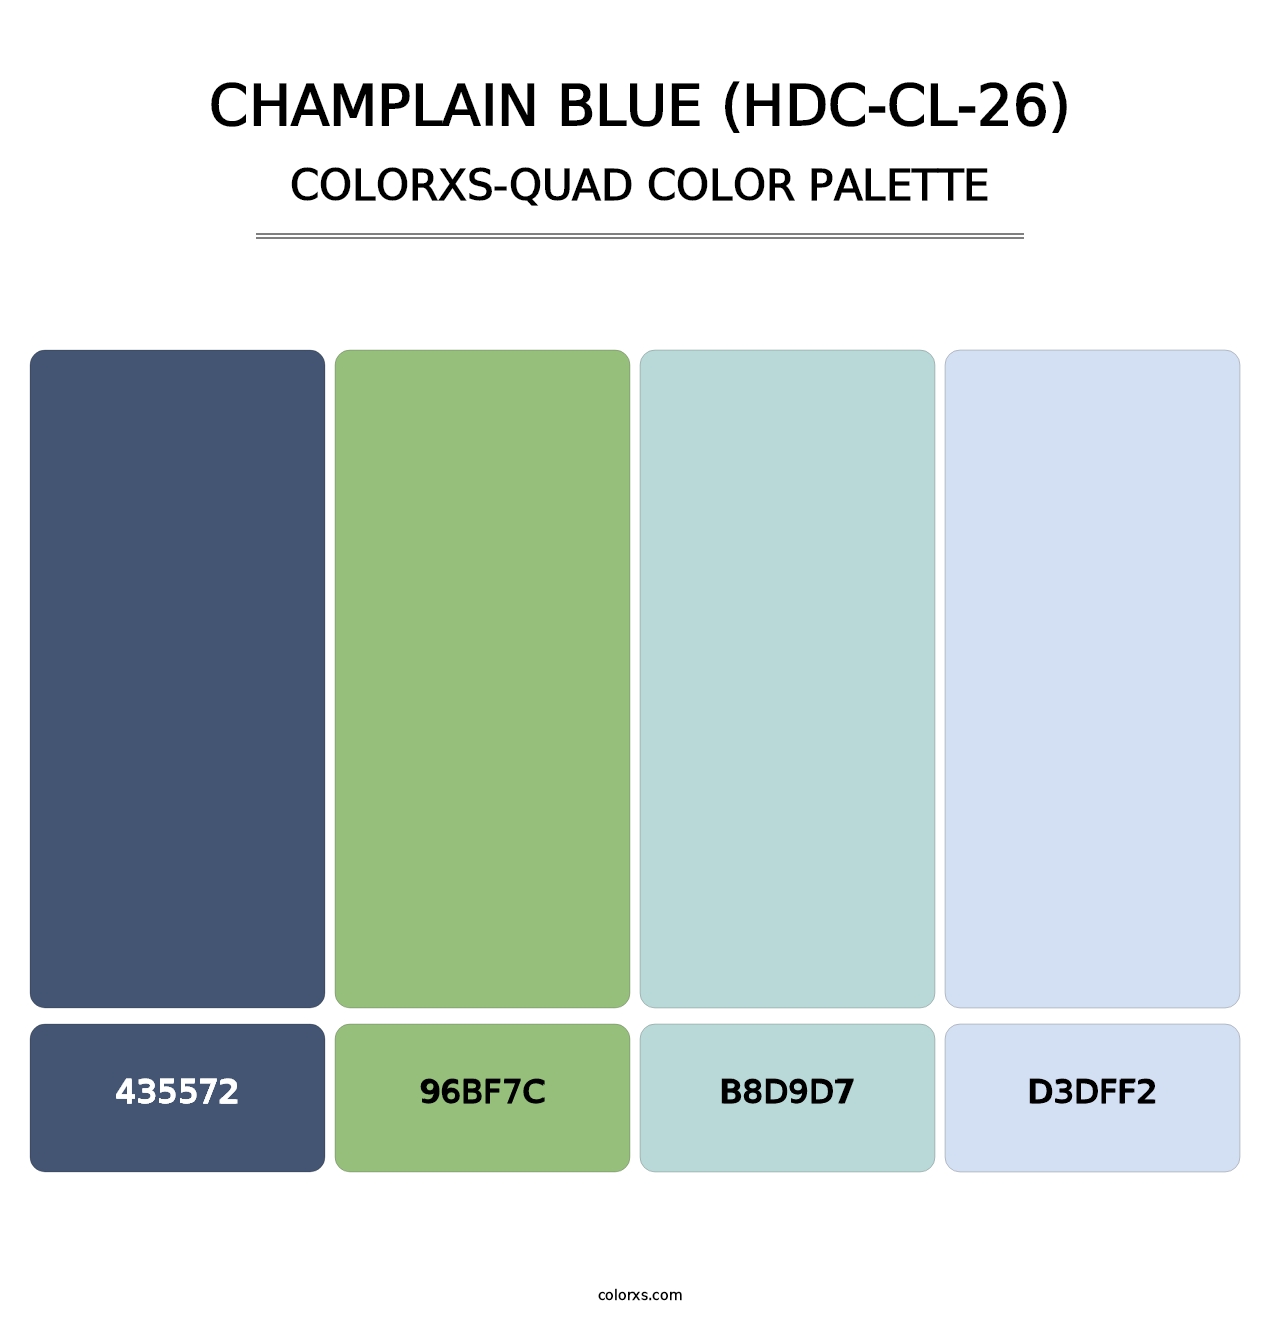 Champlain Blue (HDC-CL-26) - Colorxs Quad Palette